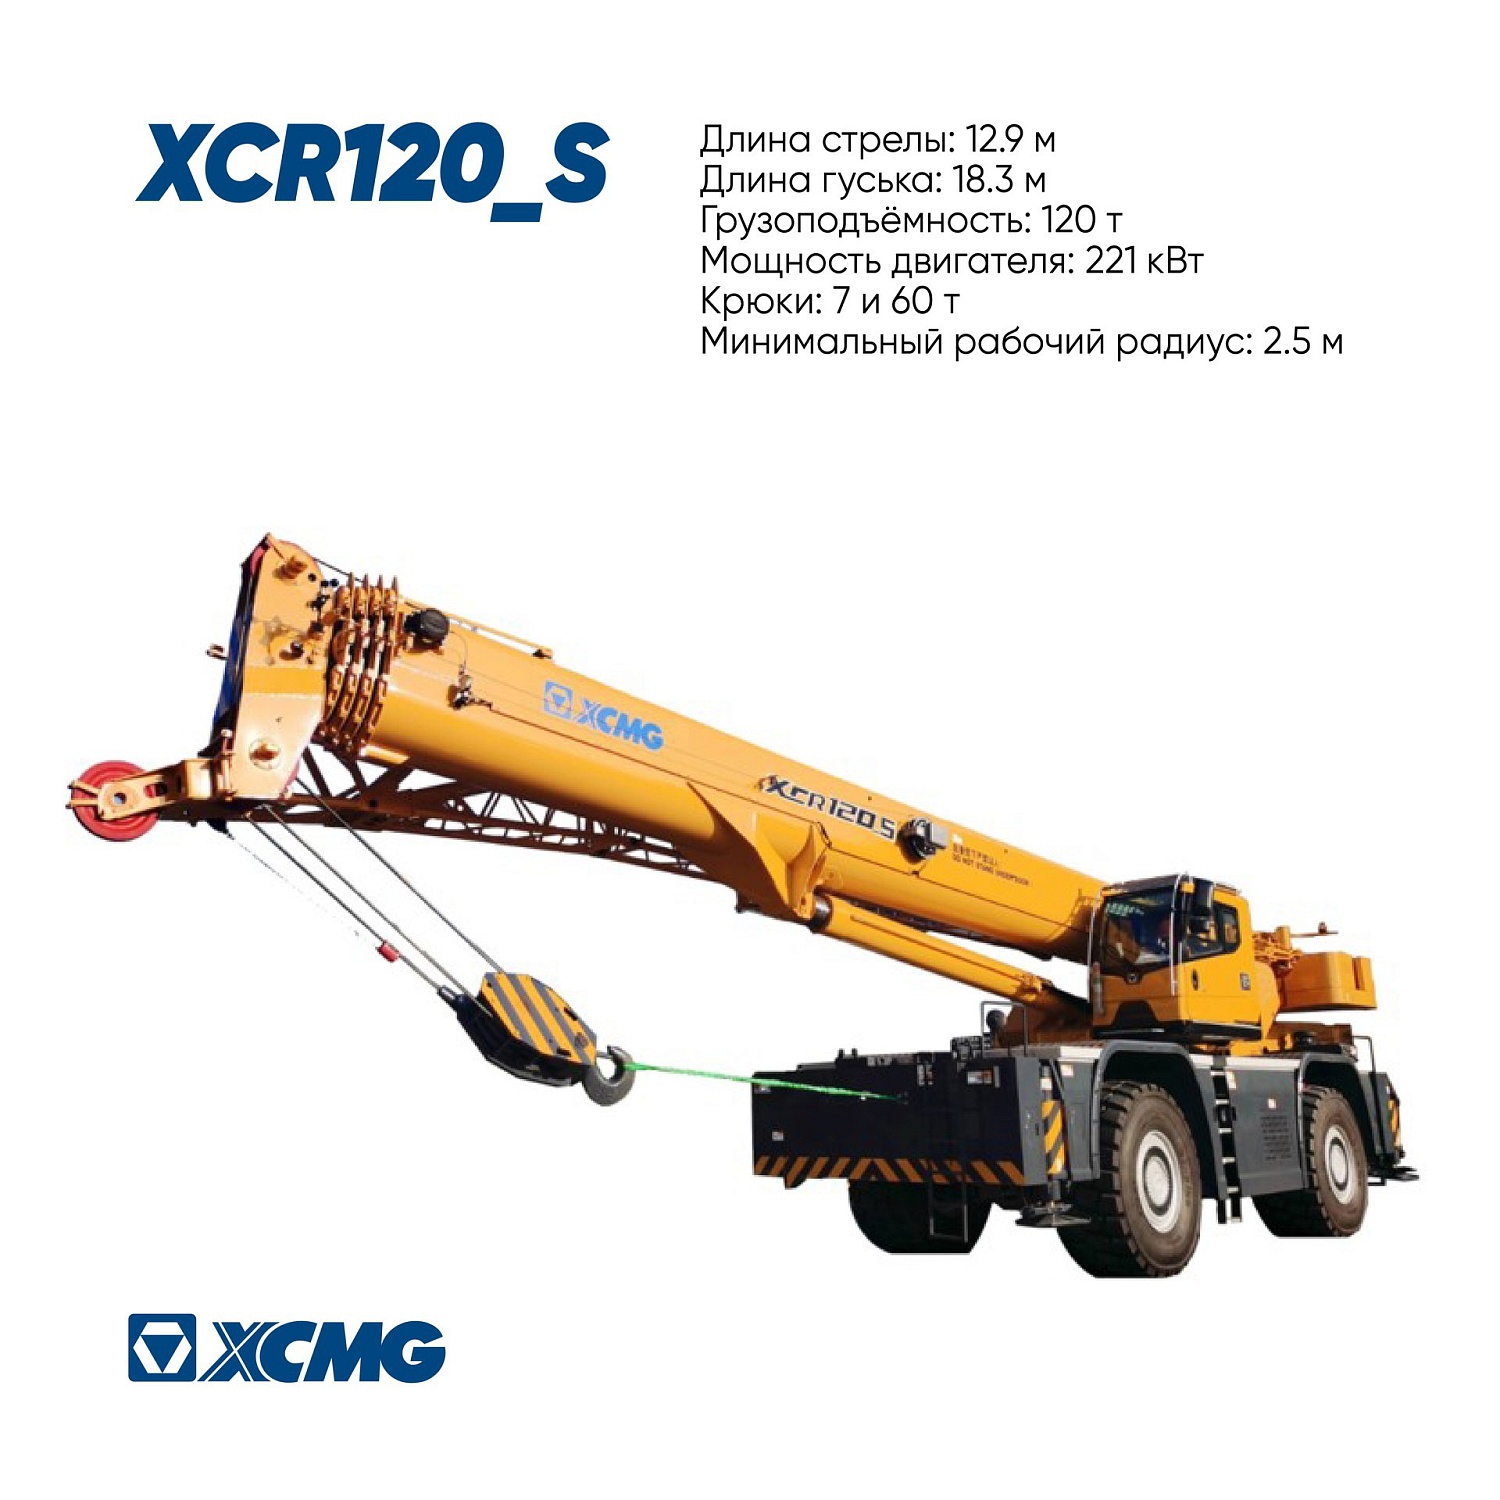 Короткобазные краны XCMG серии XCR —помощник на любой стройке.